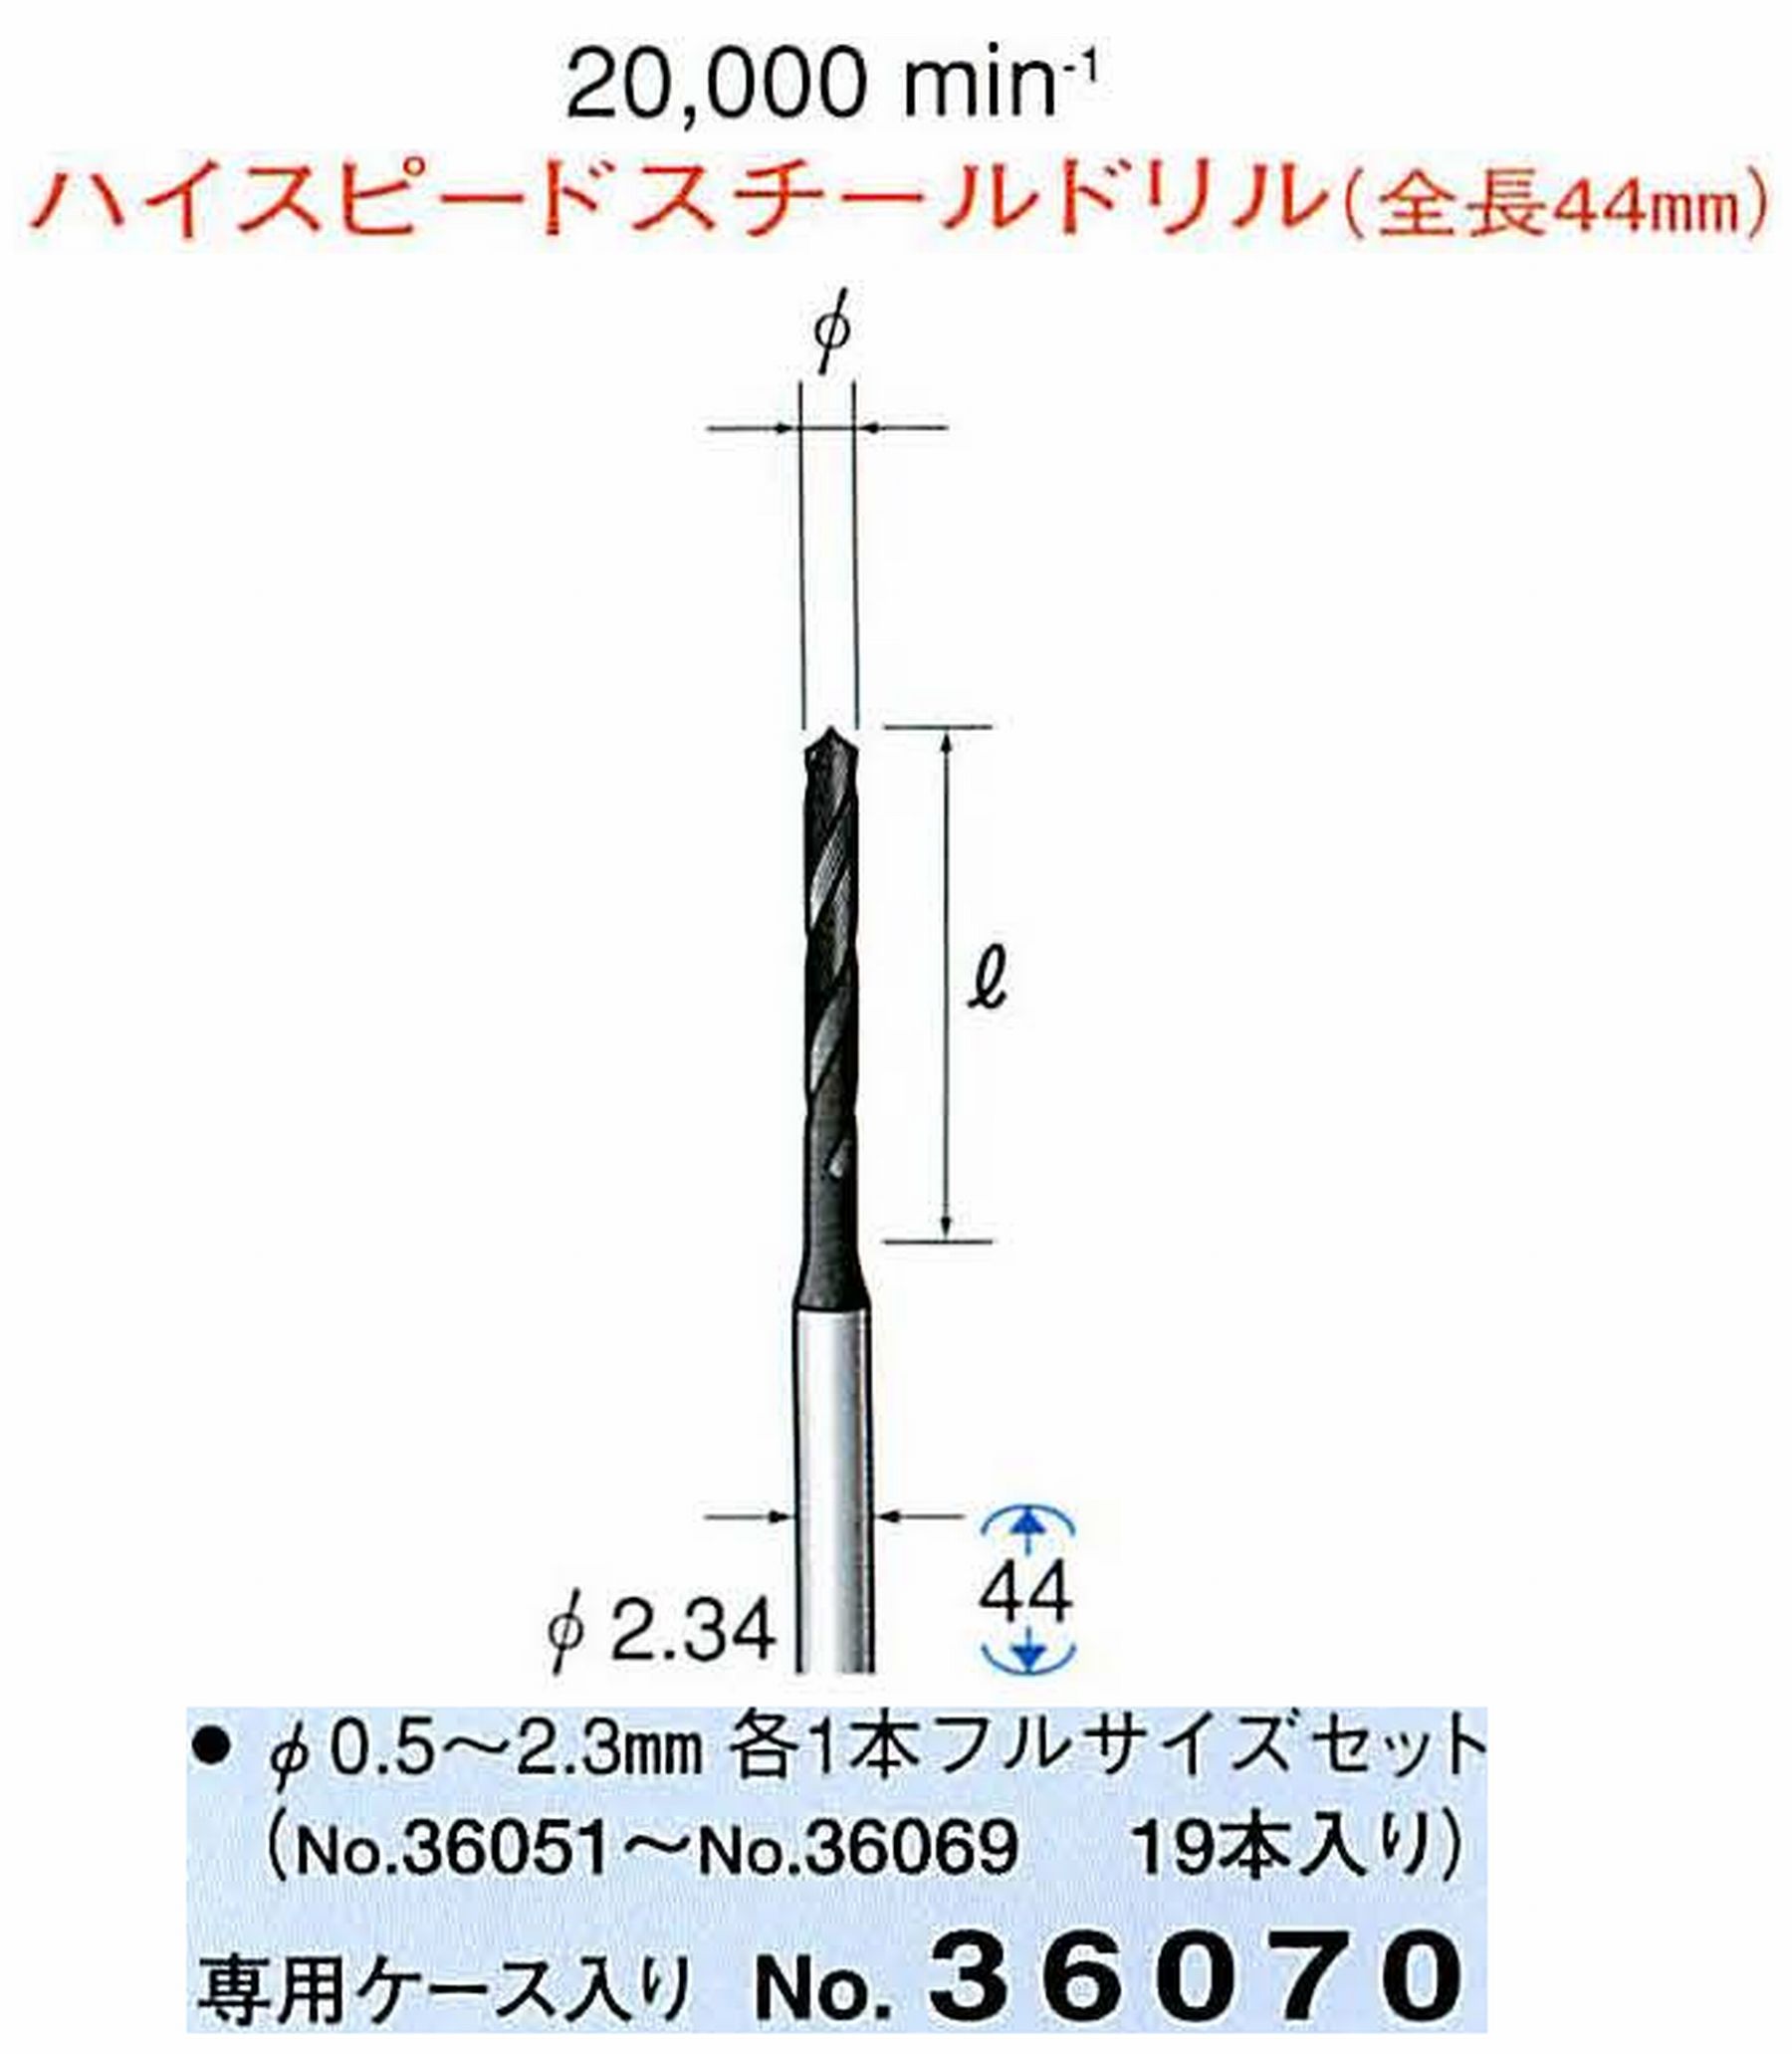 ナカニシ/NAKANISHI ツイストドリル ハイスピードスチール(H.S.S)ドリル(全長44mm)φ0.5～2.3mm 各1本フルセットサイズ19本セット 軸径(シャンク) φ2.34mm 36070